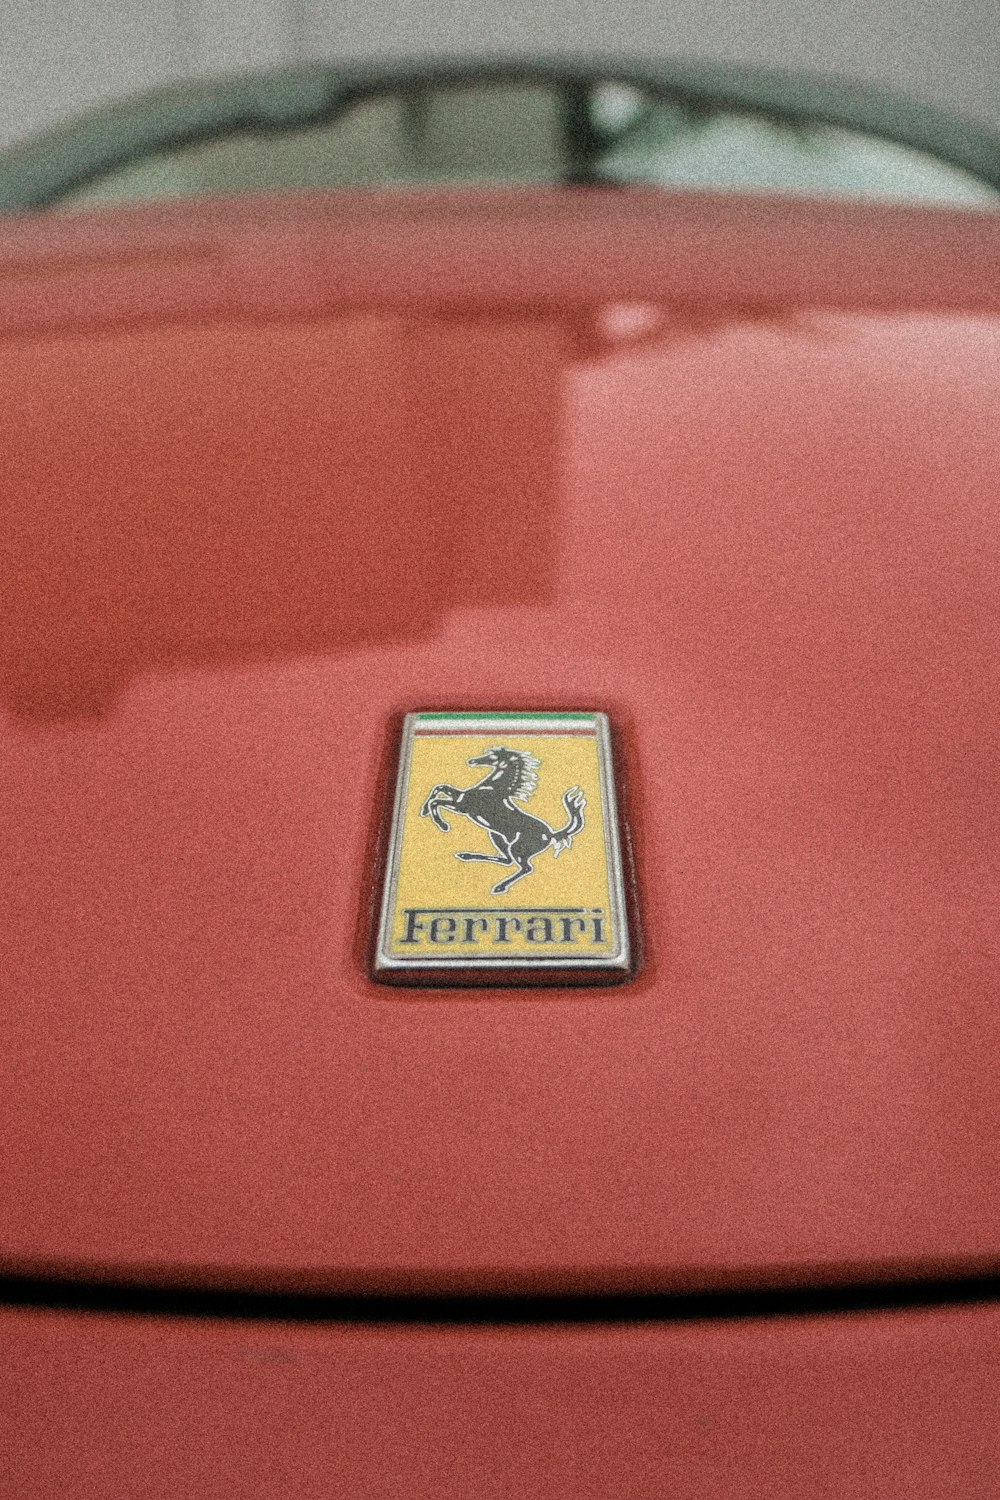 Ferrariエンブレム